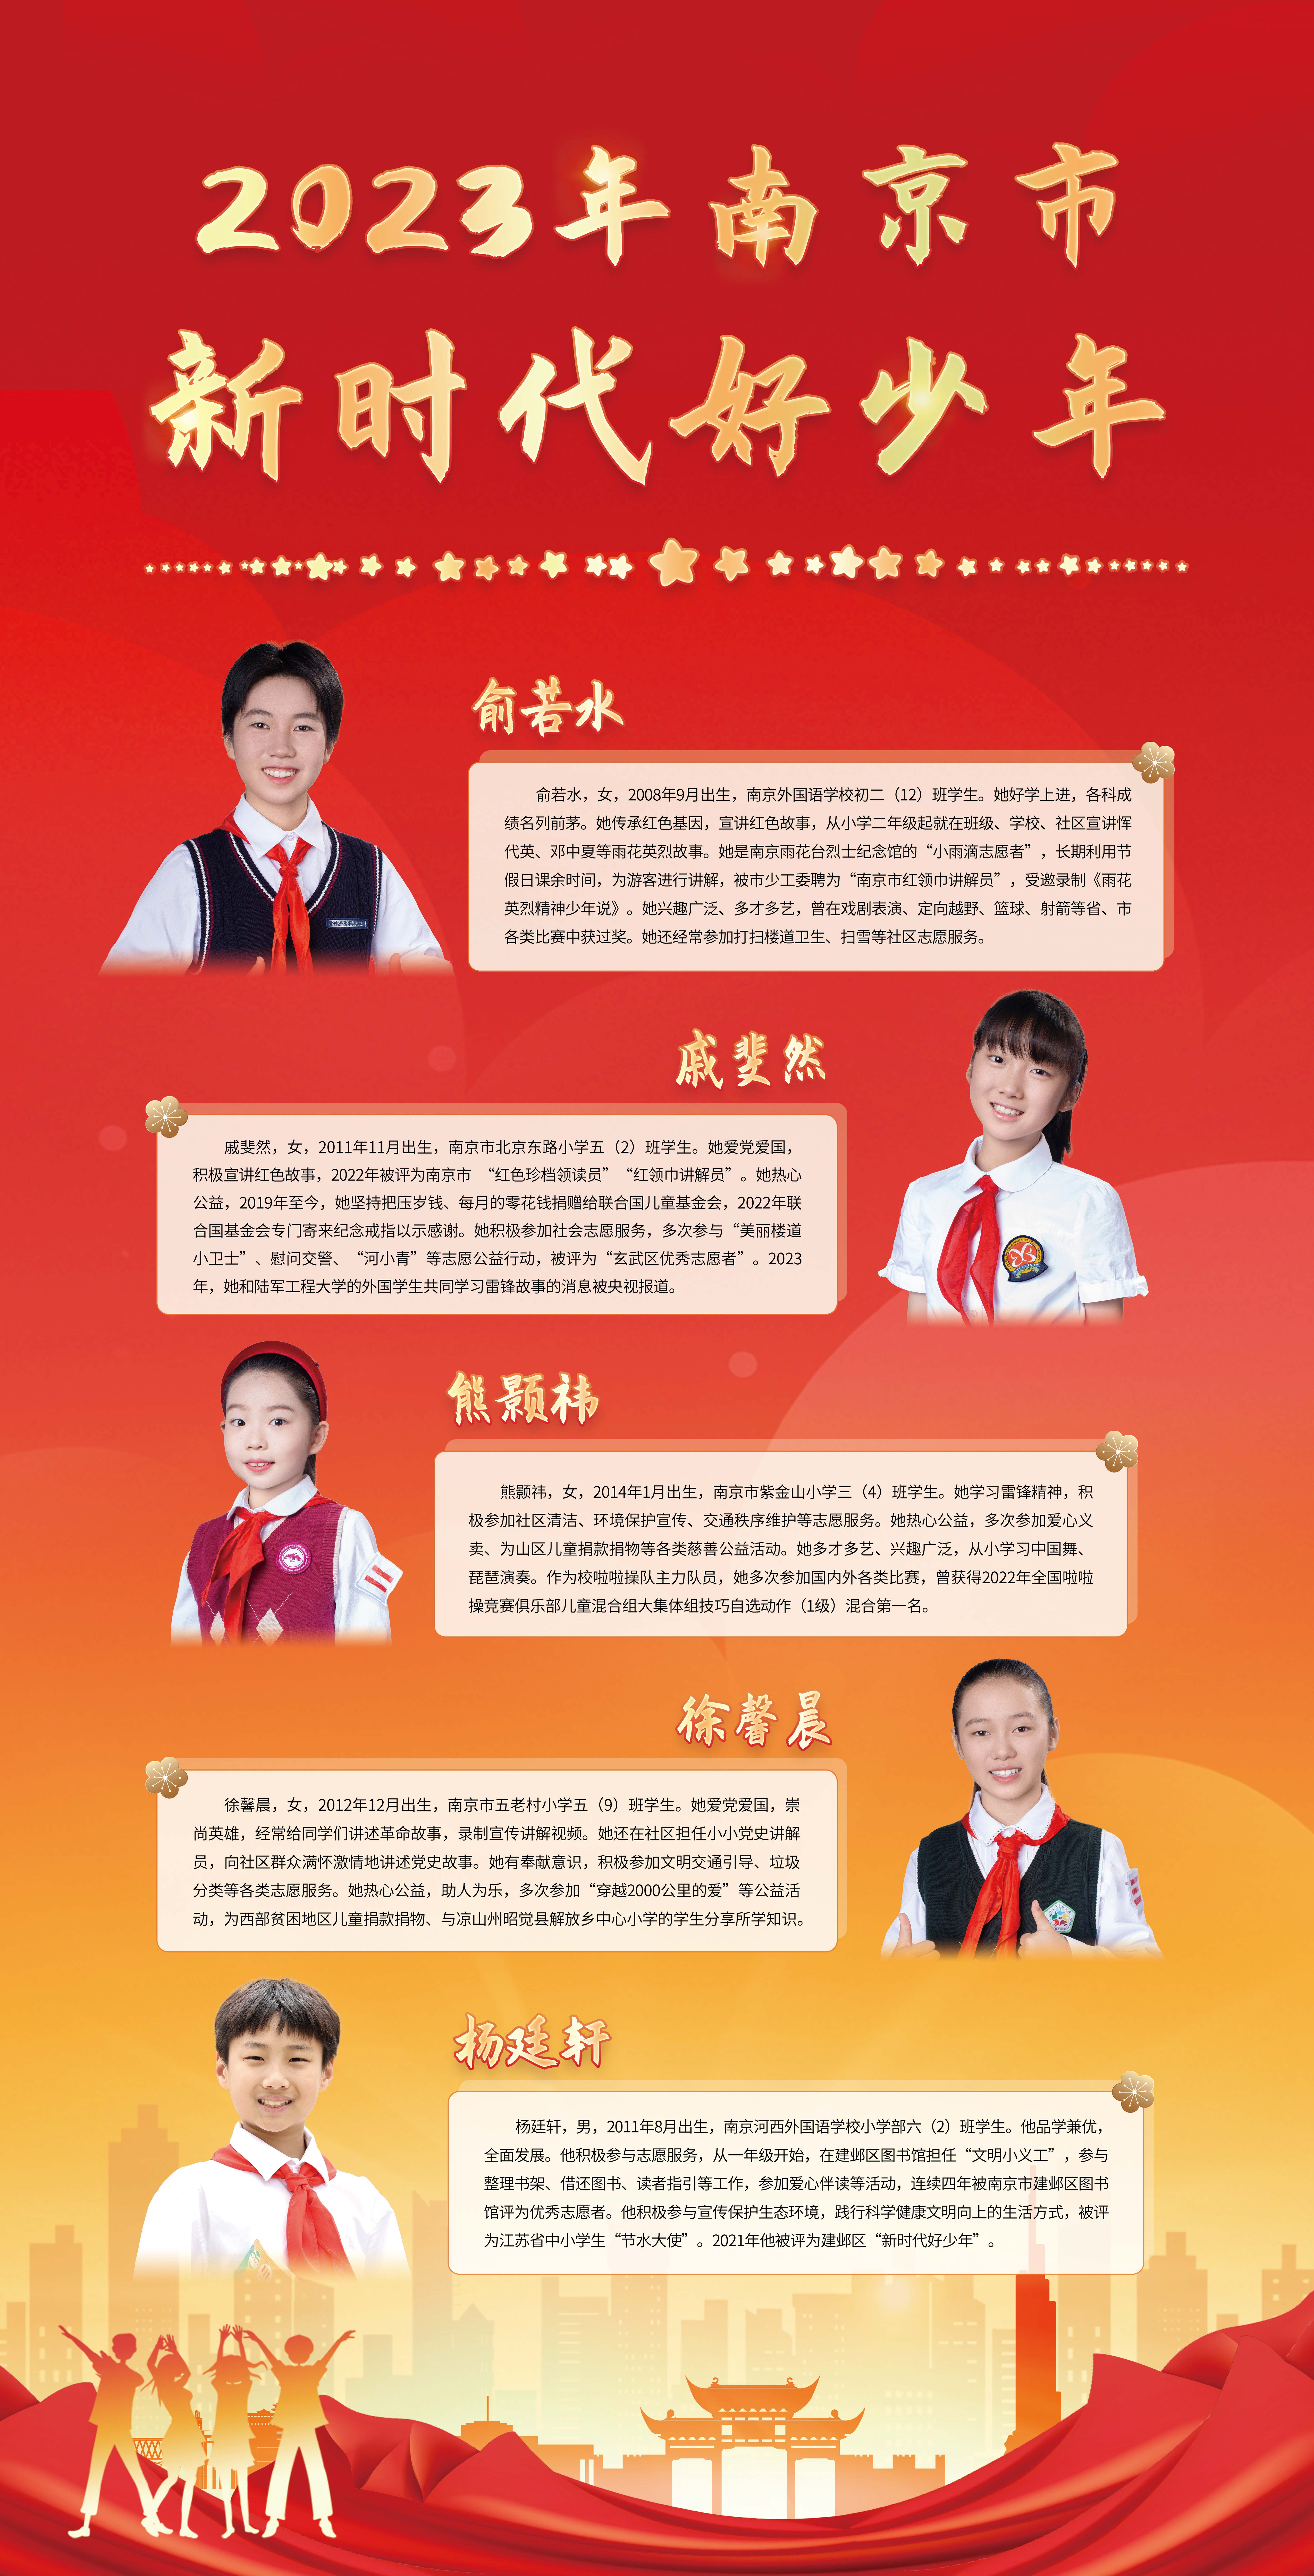 2023-年南京市第一批“新时代好少年”宣传展示图9.jpg